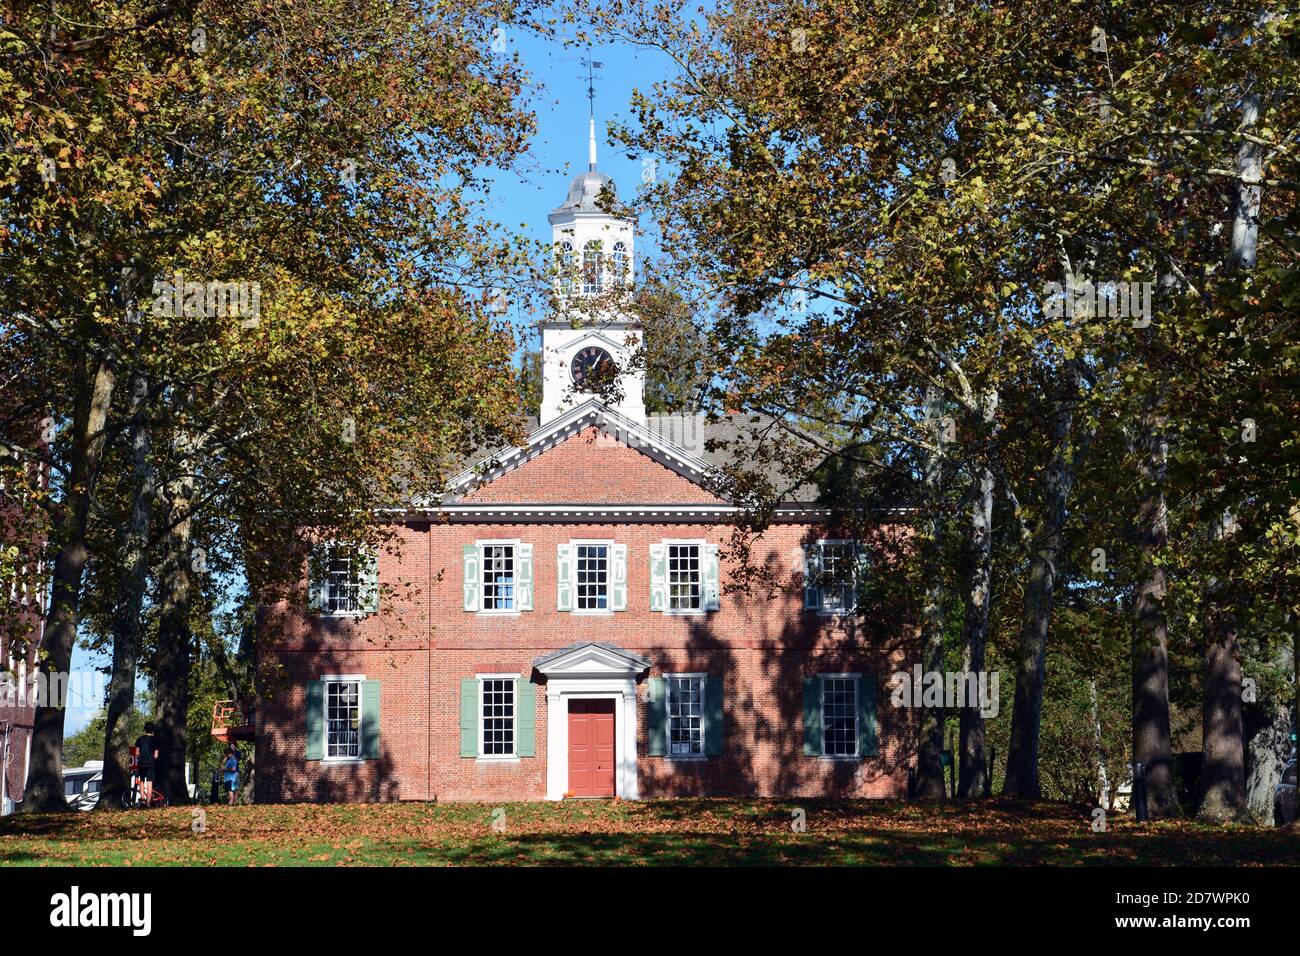 Lo storico tribunale della contea di Chowan, in epoca coloniale, a Edenton, North Carolina, è stato costruito nel 1767. Foto Stock